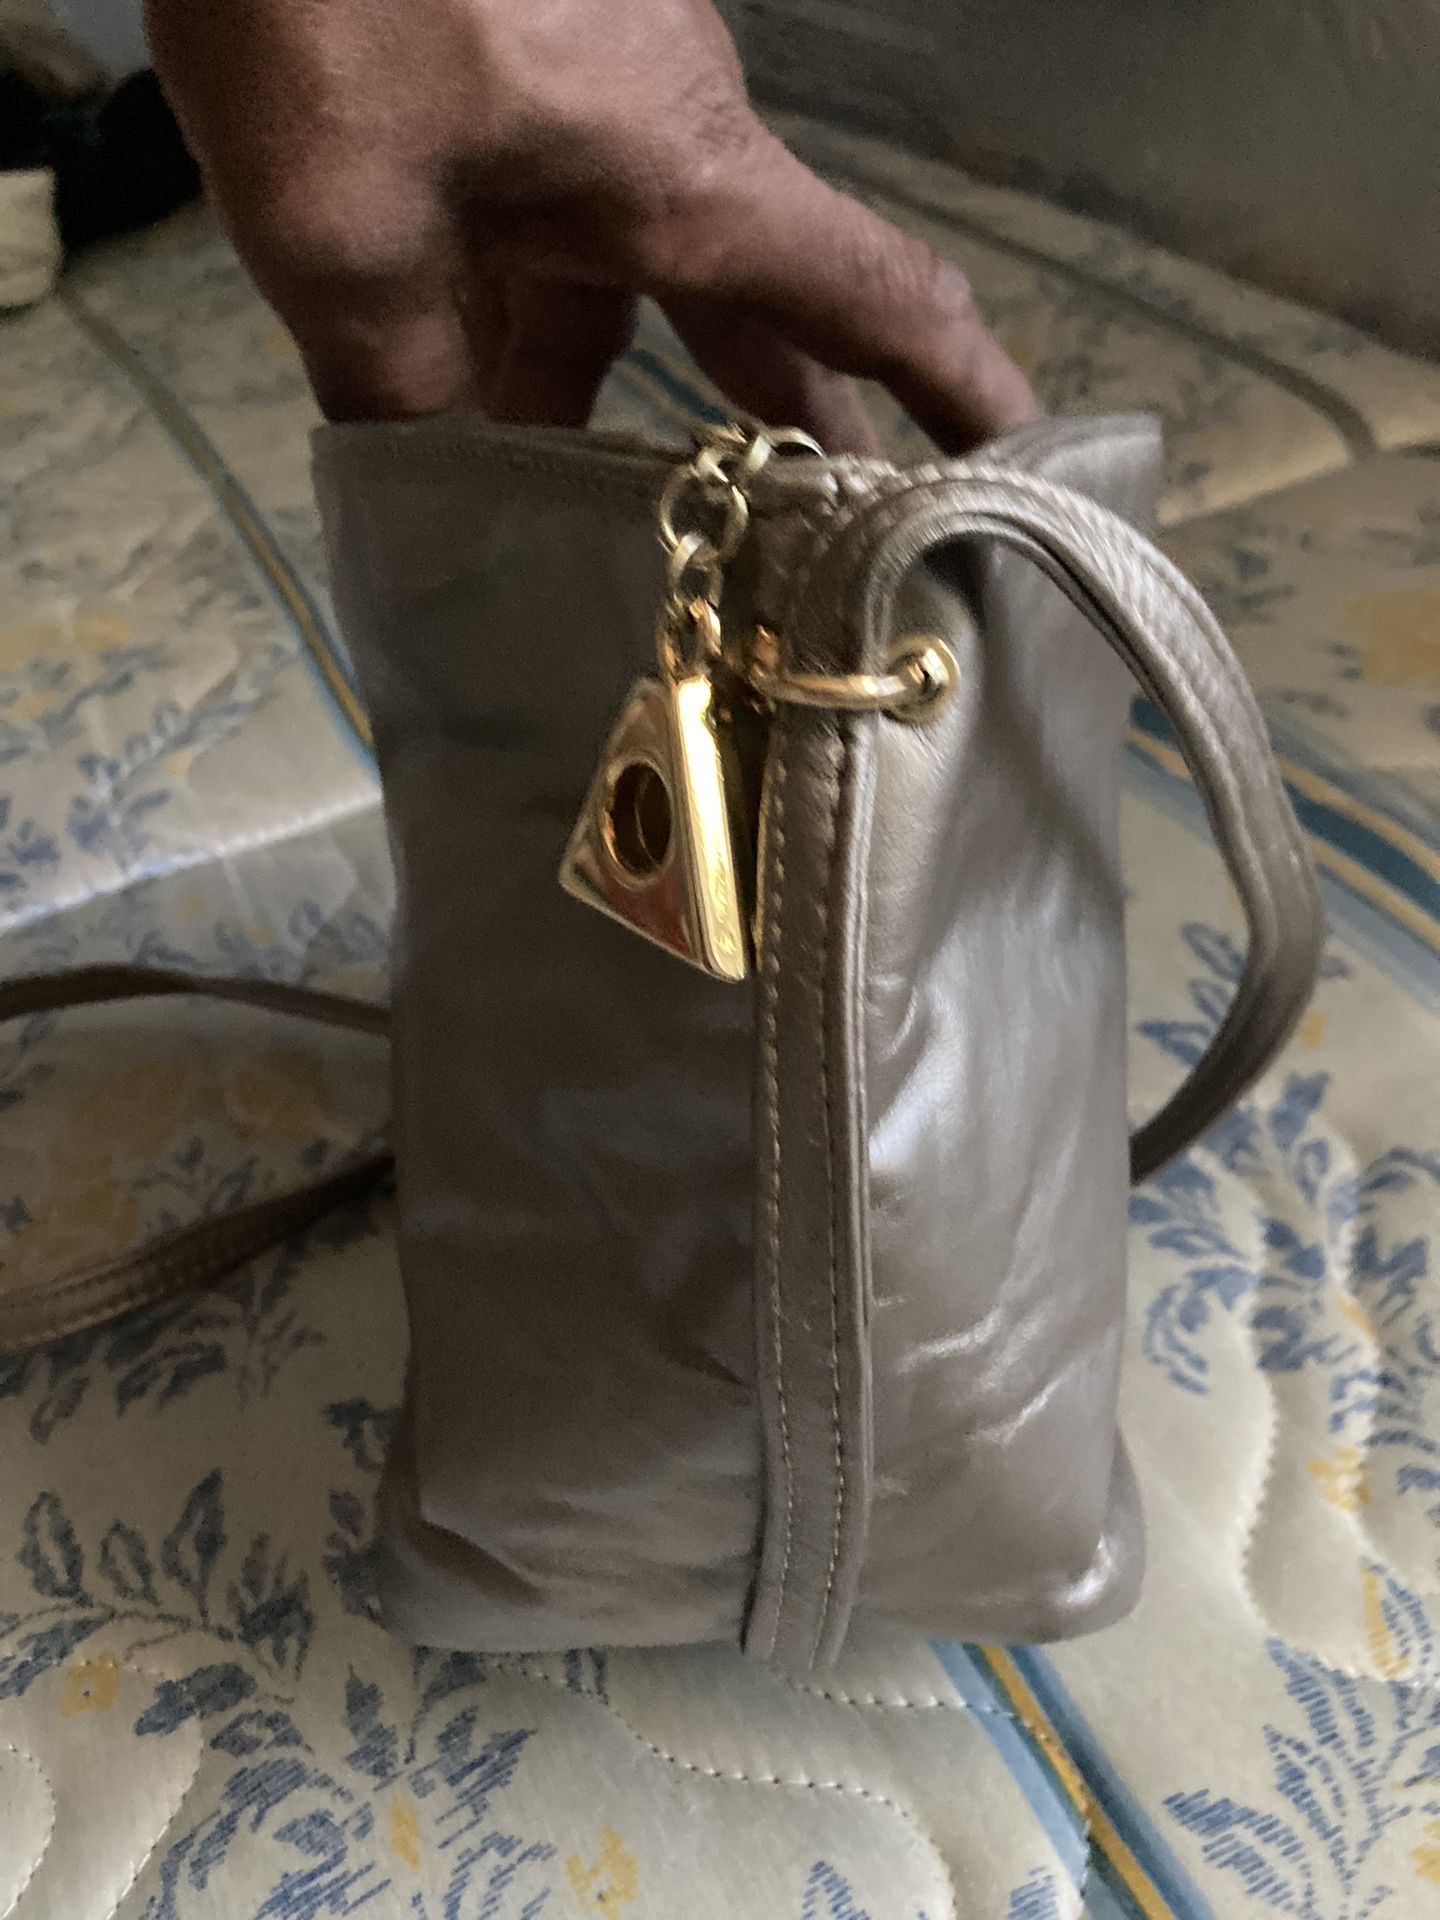 Dawli Gold Zipper purse